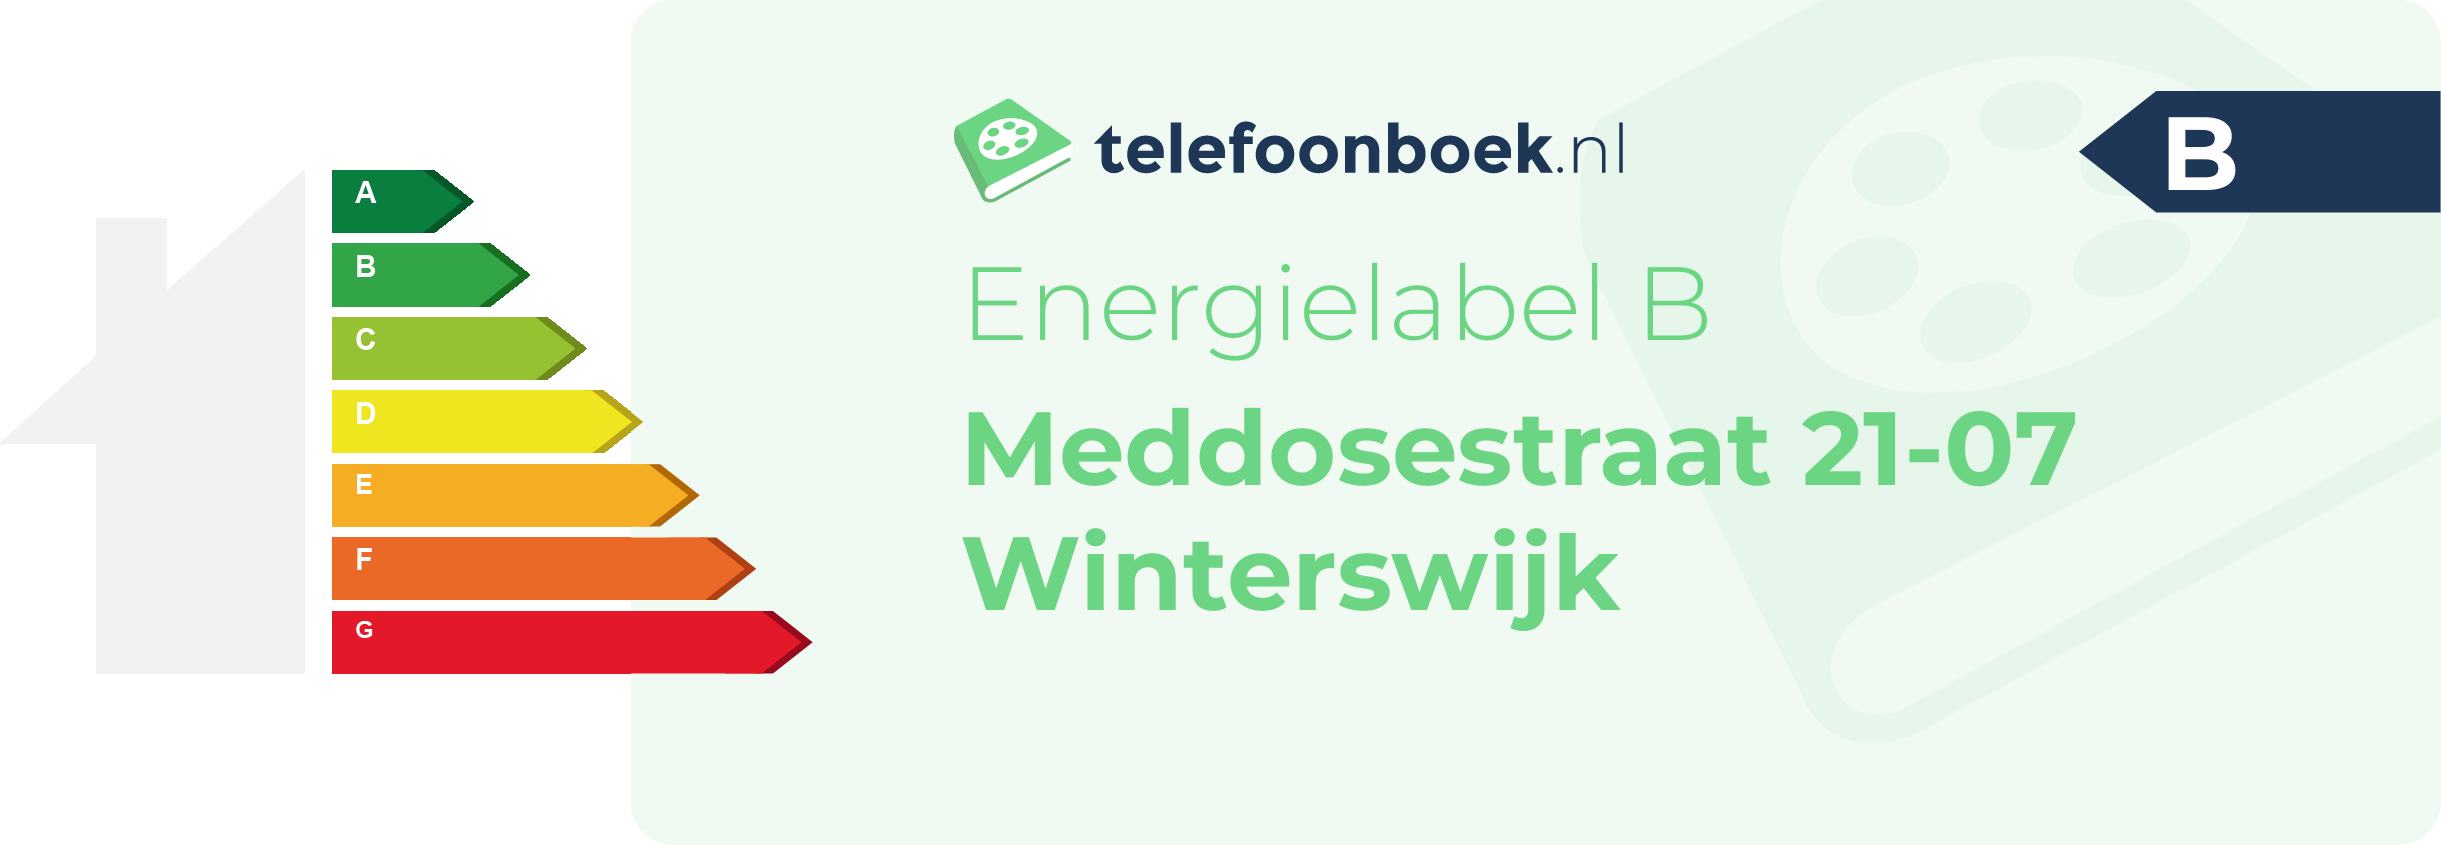 Energielabel Meddosestraat 21-07 Winterswijk